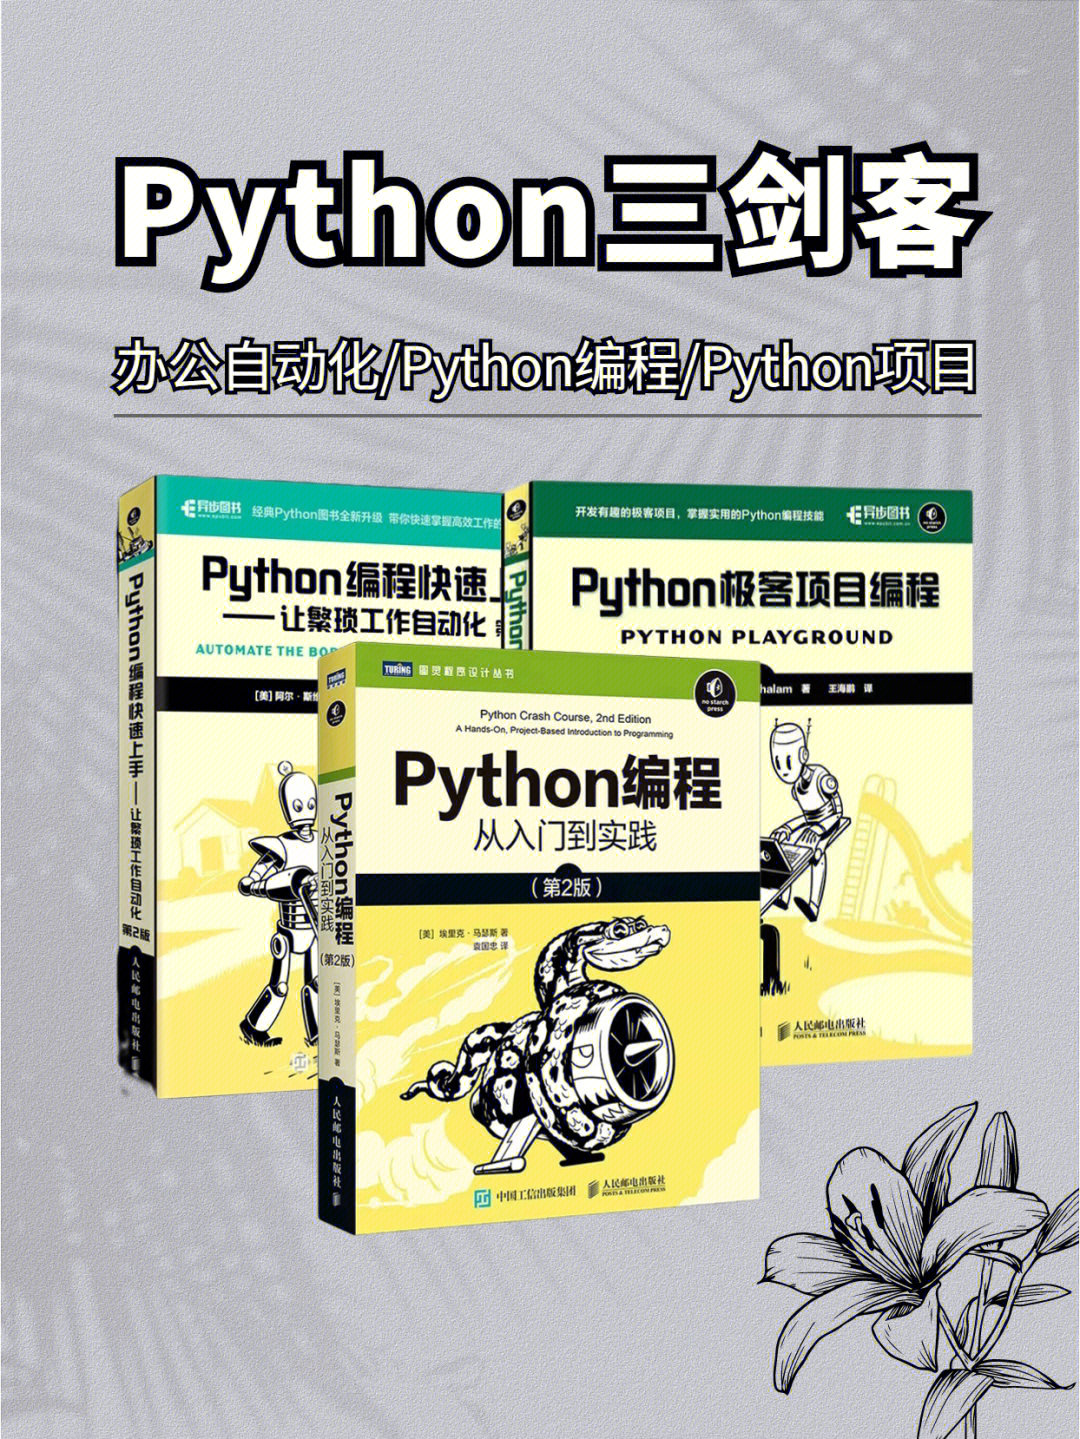 python核心编程 第三版 英文版_python核心编程 豆瓣_python核心编程第二版和第三版区别